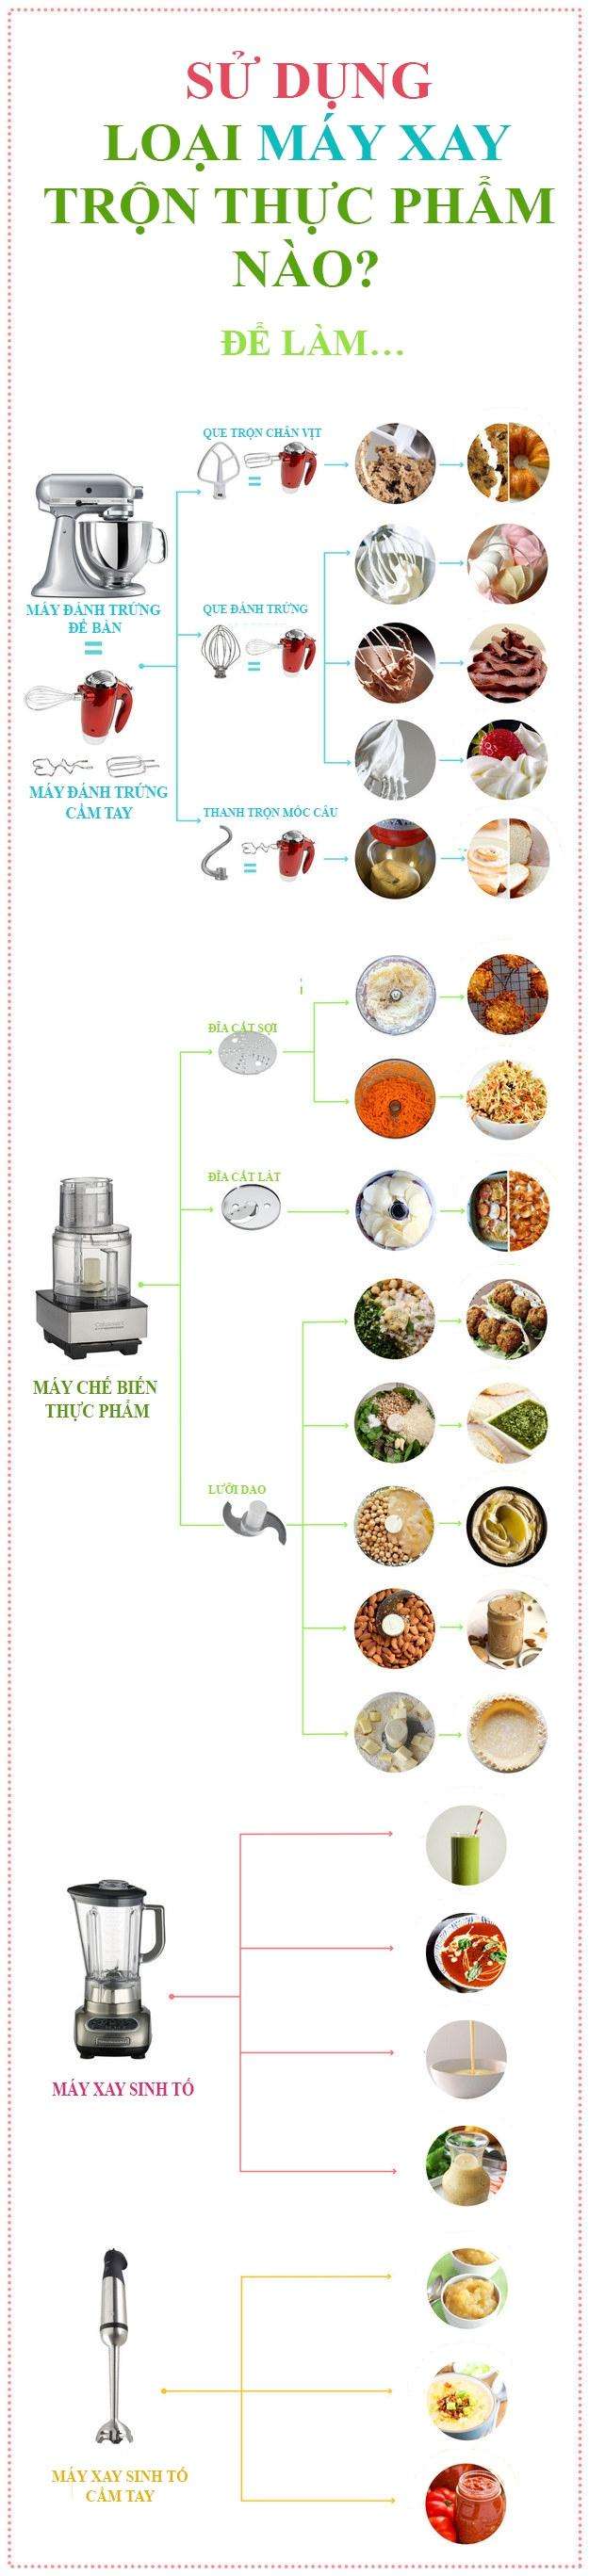 Chọn loại nào trong các máy sau: Chế biến thức phẩm, đánh trứng hay máy xay sinh tố?